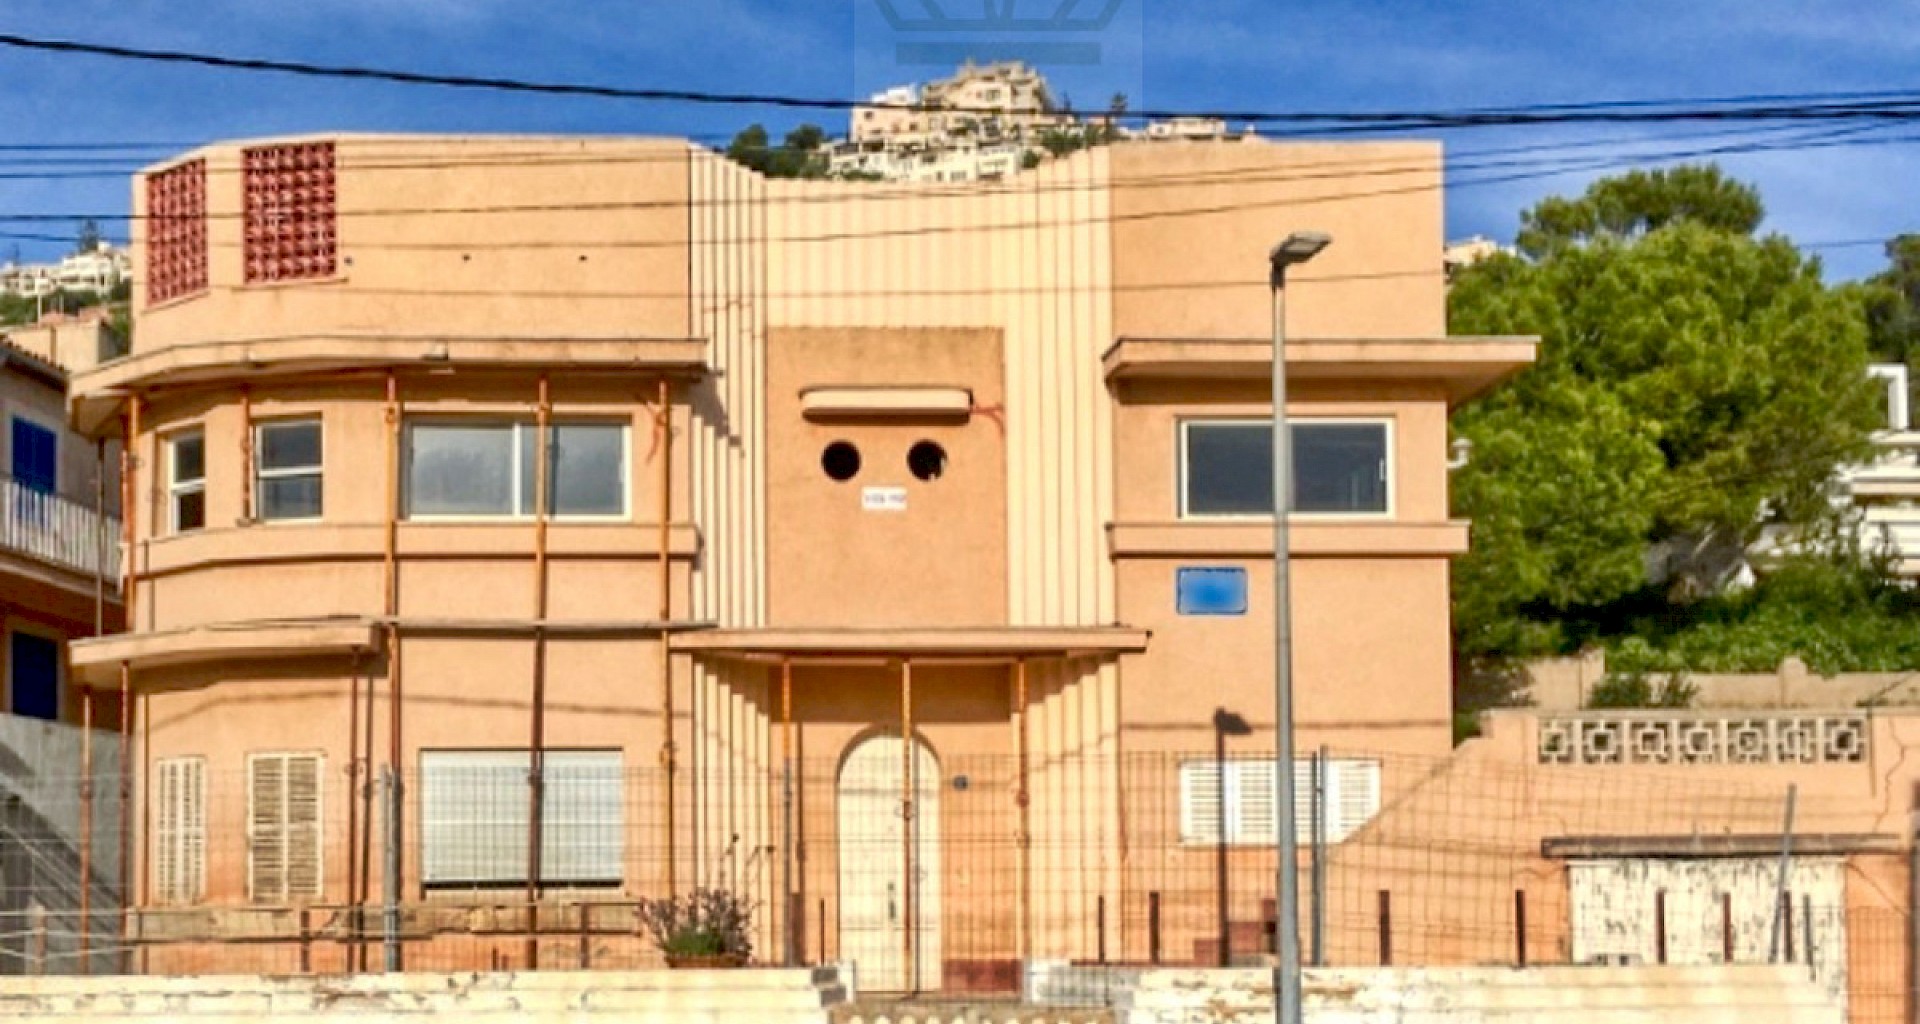 KROHN & LUEDEMANN Casa Art Deco en Puerto de Andratx en una ubicación privilegiada para saneamiento Fassade 2